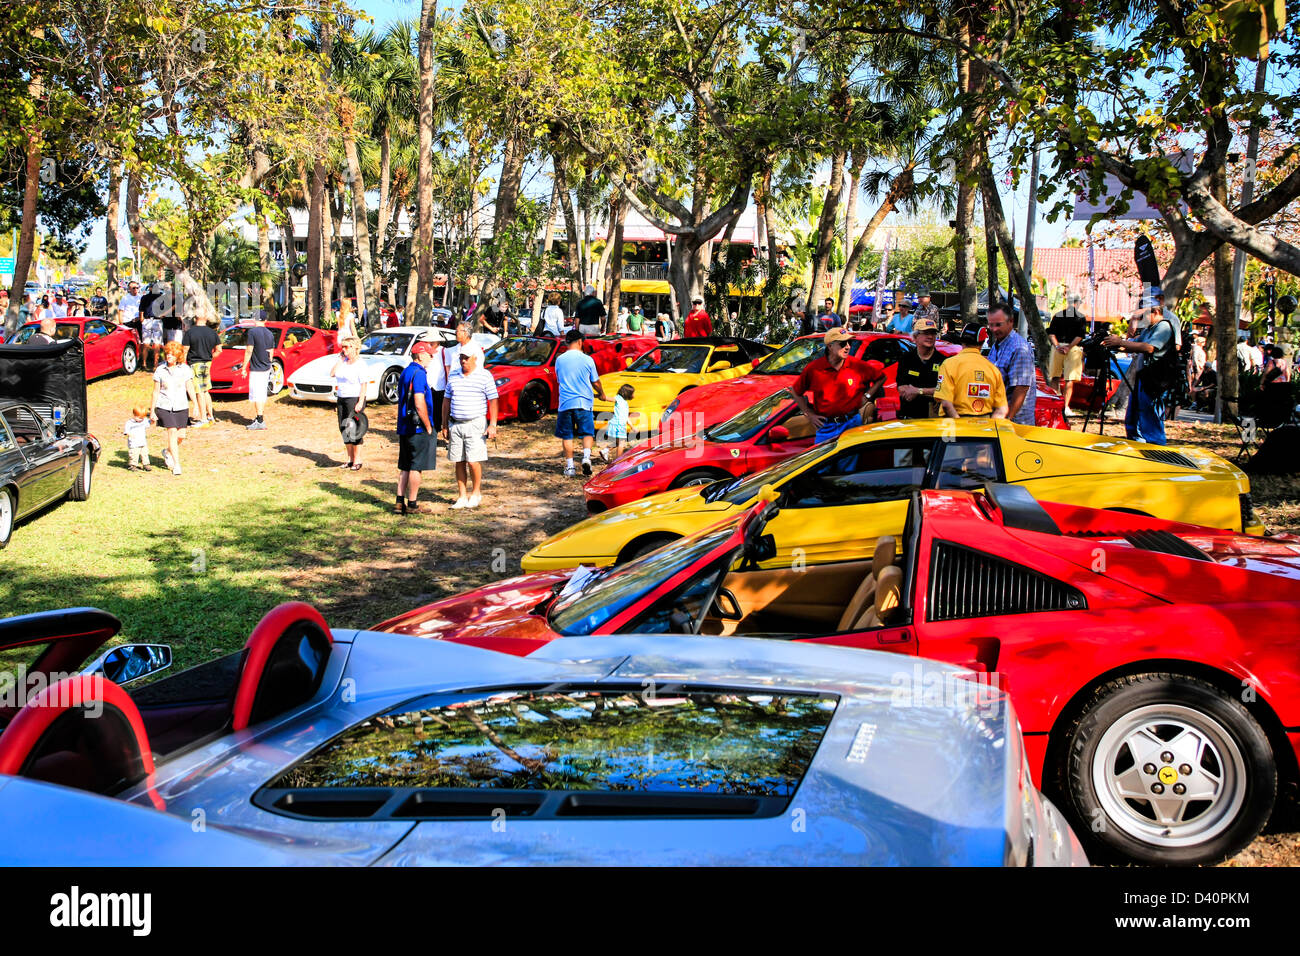 The Sarasota Exotic Car Show at St. Armands Circle Florida Stock Photo